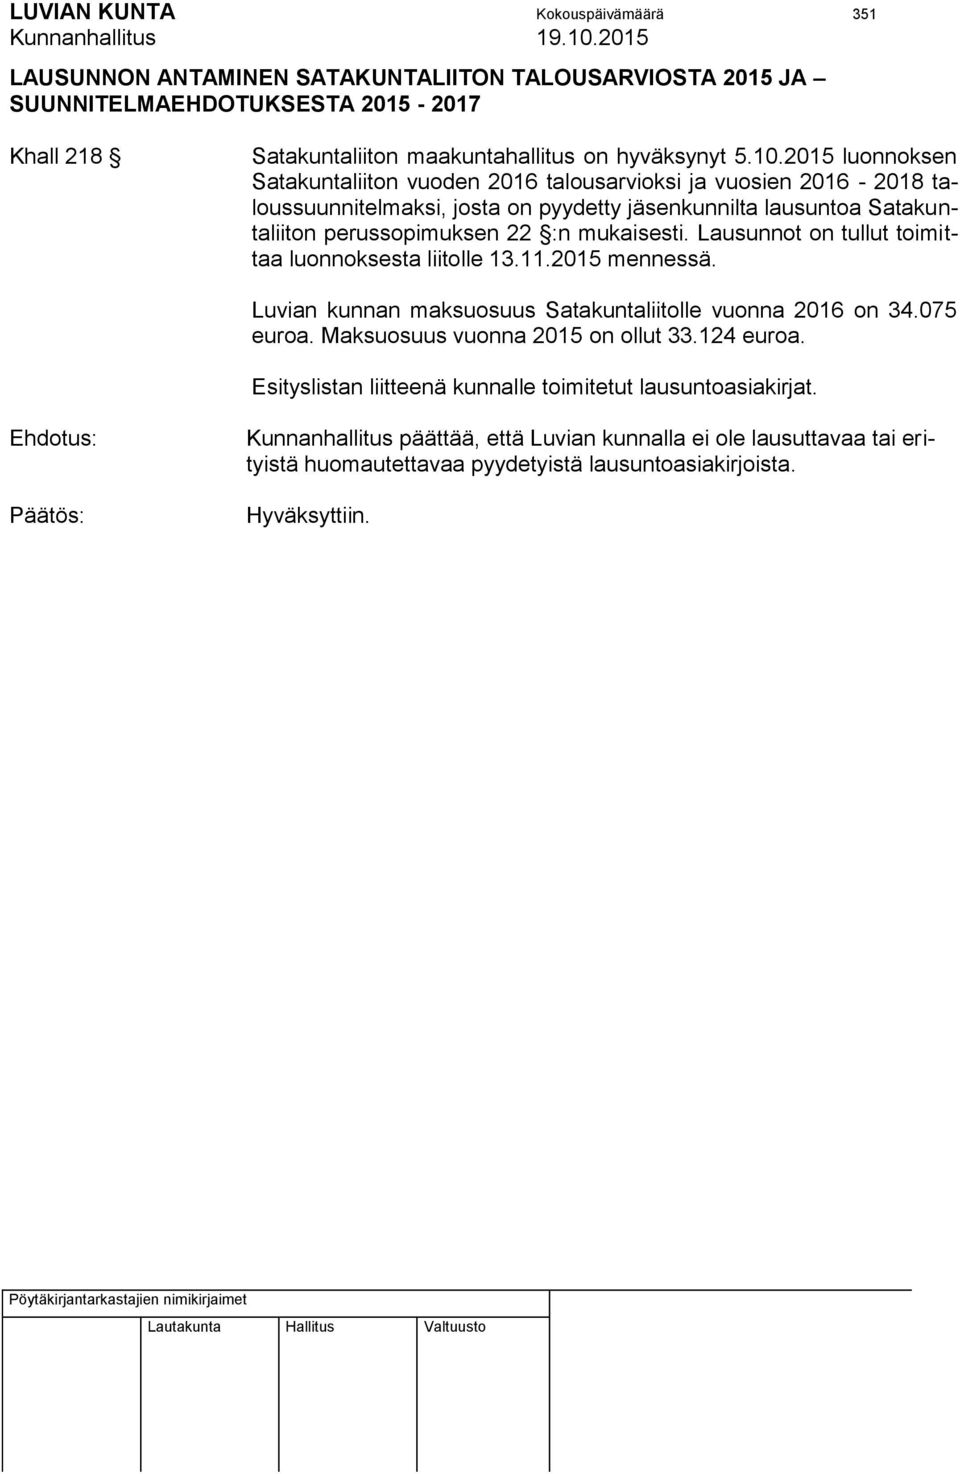 mukaisesti. Lausunnot on tullut toimittaa luonnoksesta liitolle 13.11.2015 mennessä. Luvian kunnan maksuosuus Satakuntaliitolle vuonna 2016 on 34.075 euroa.